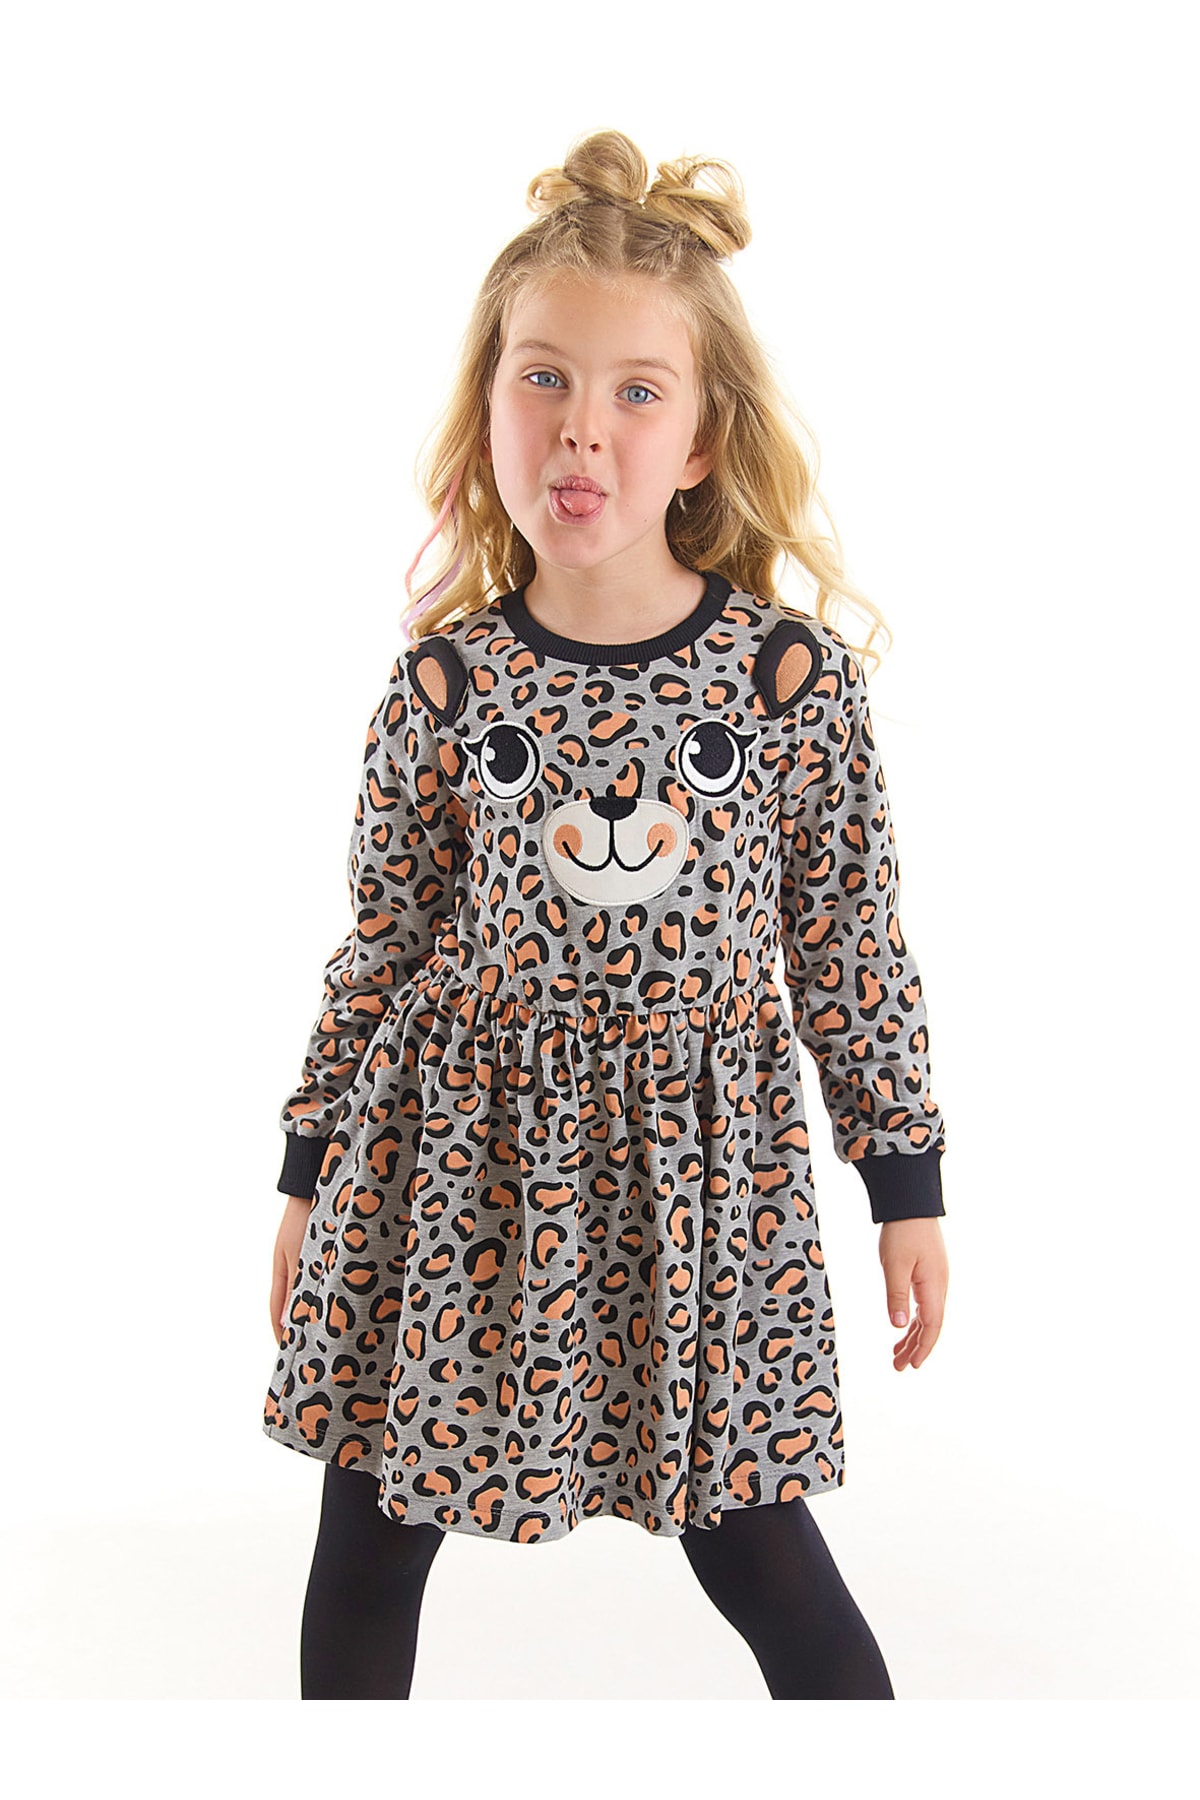 Levně Denokids Leopard Patterned Gray Girls' Dress